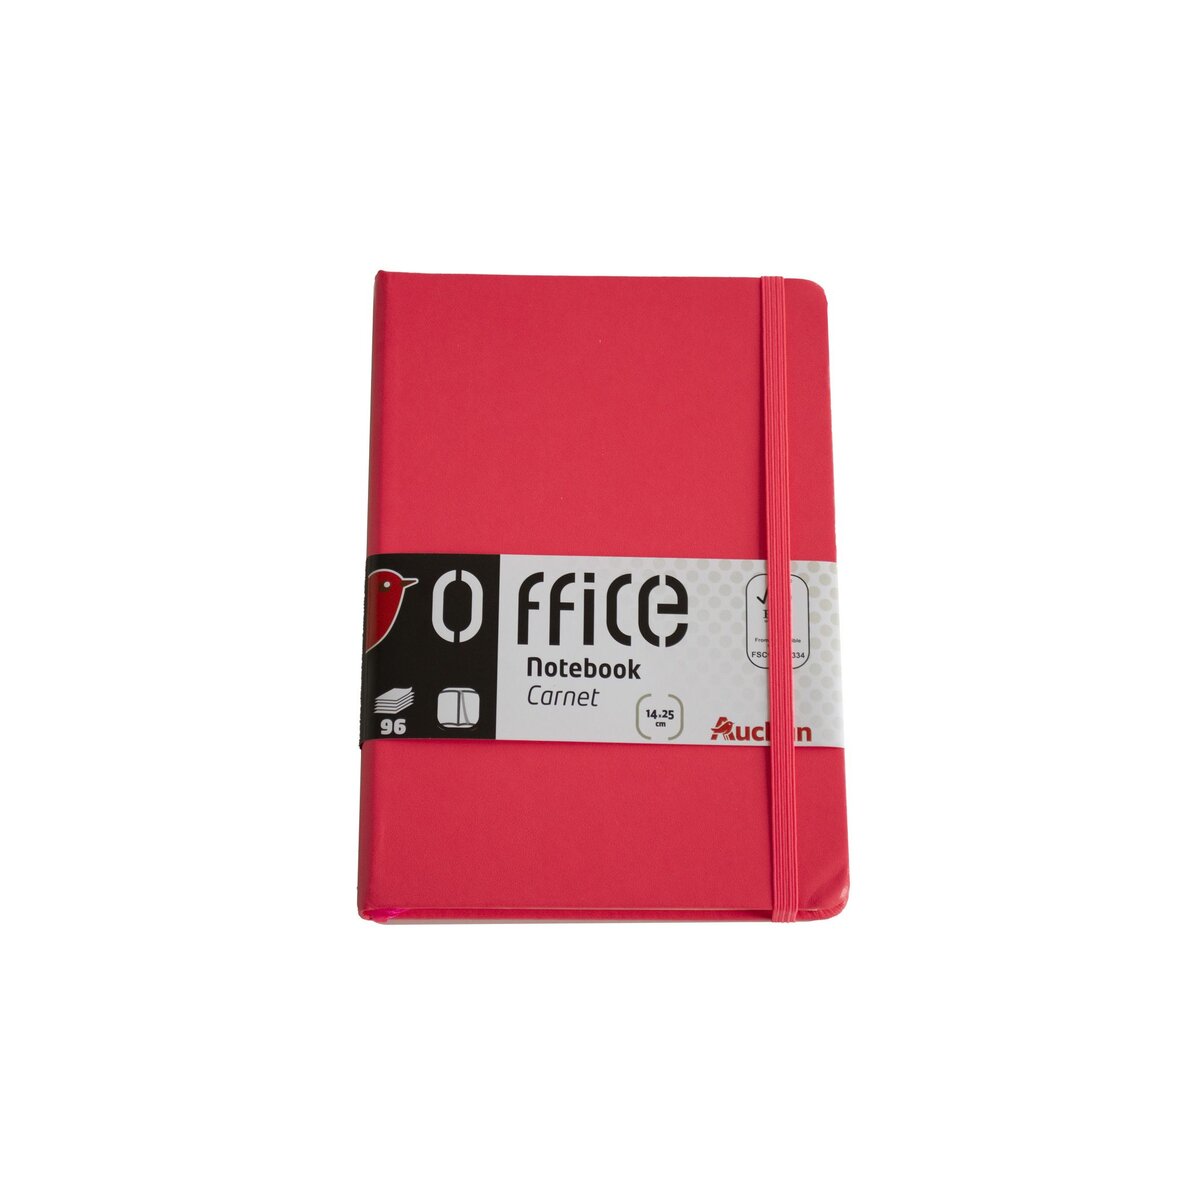 AUCHAN Carnet premium Notebook - 96 pages - 14x25cm - Rouge